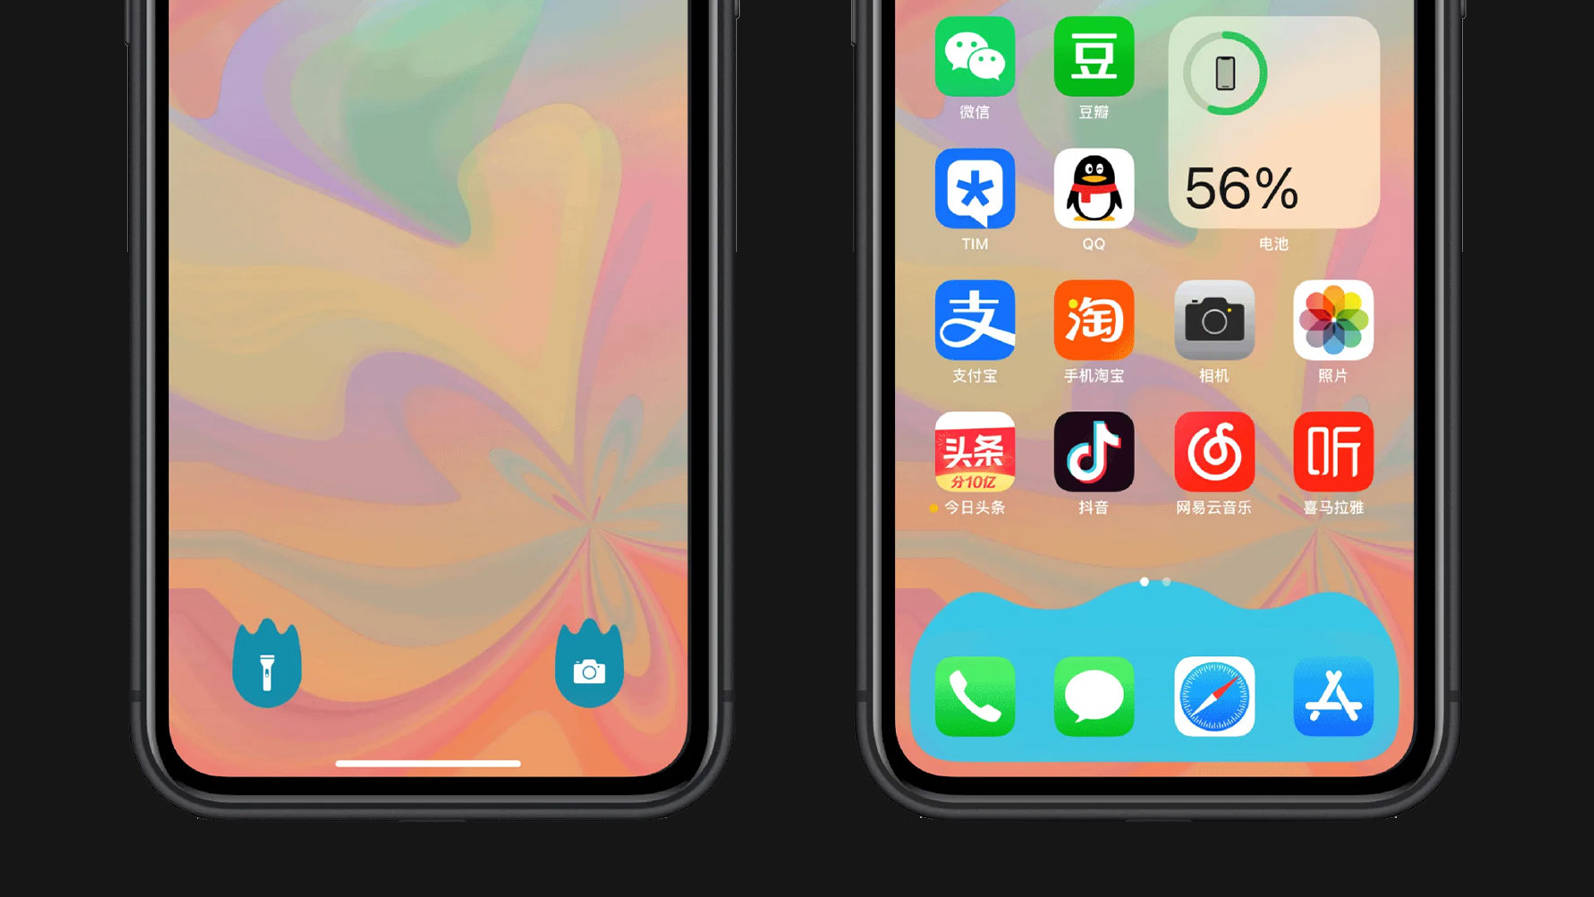 原创iphone特效壁纸更新:可修改锁屏图标,隐藏dock栏